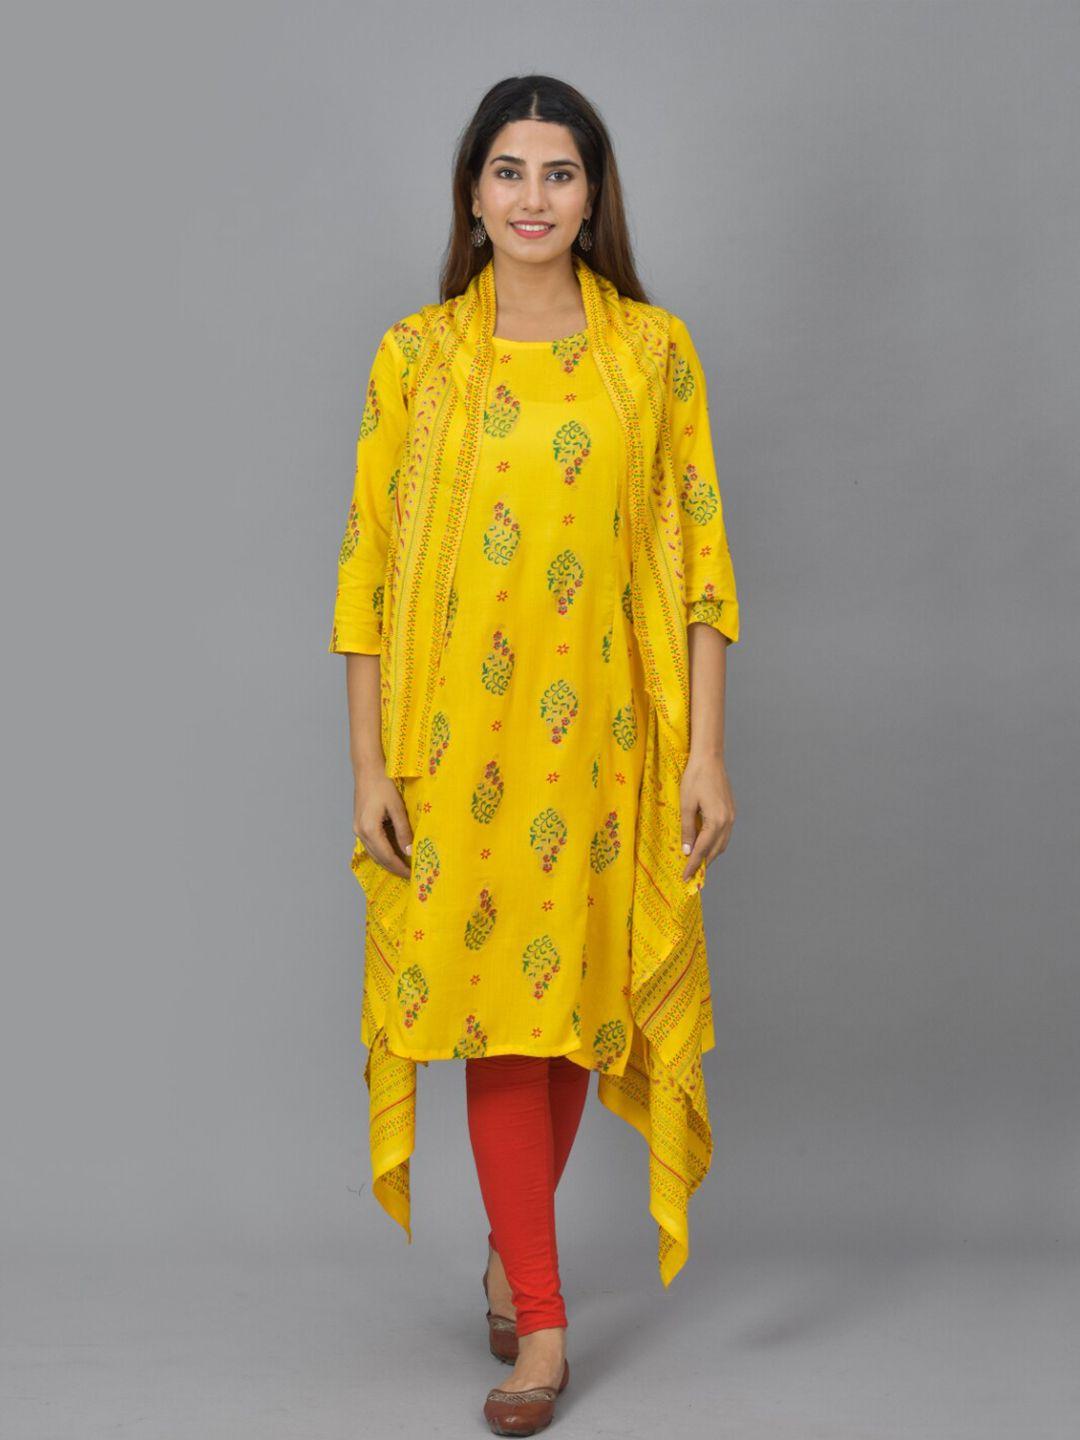 kalini yellow ethnic motifs maternity a-line dress